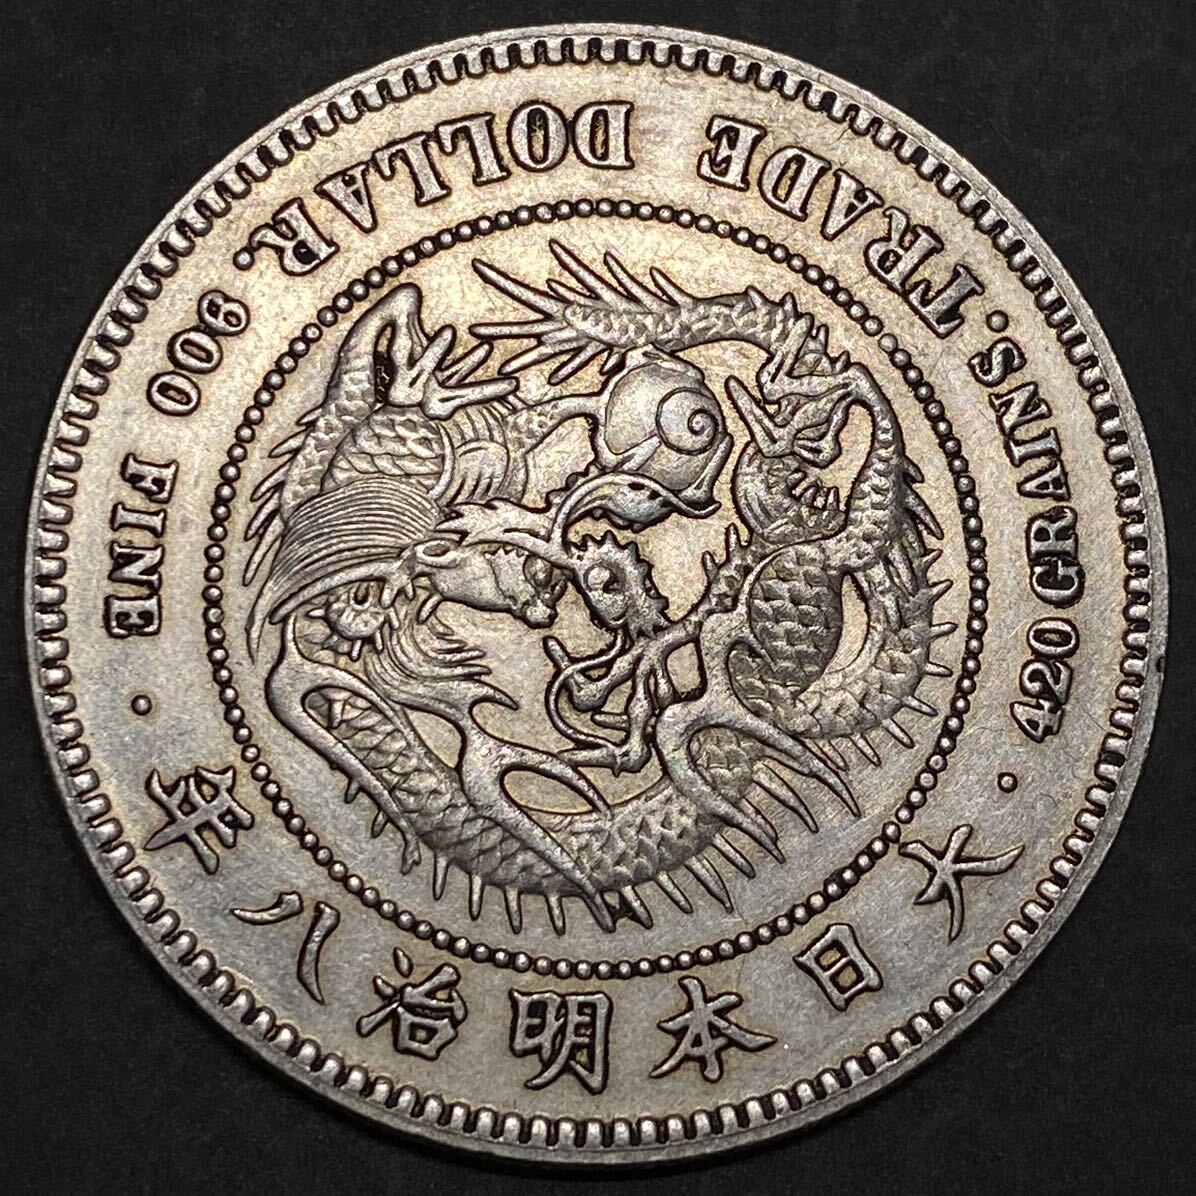 日本 古銭 貿易銀 銀貨 明治8年 約26.49g 一円貨幣 硬貨骨董品コインの画像2